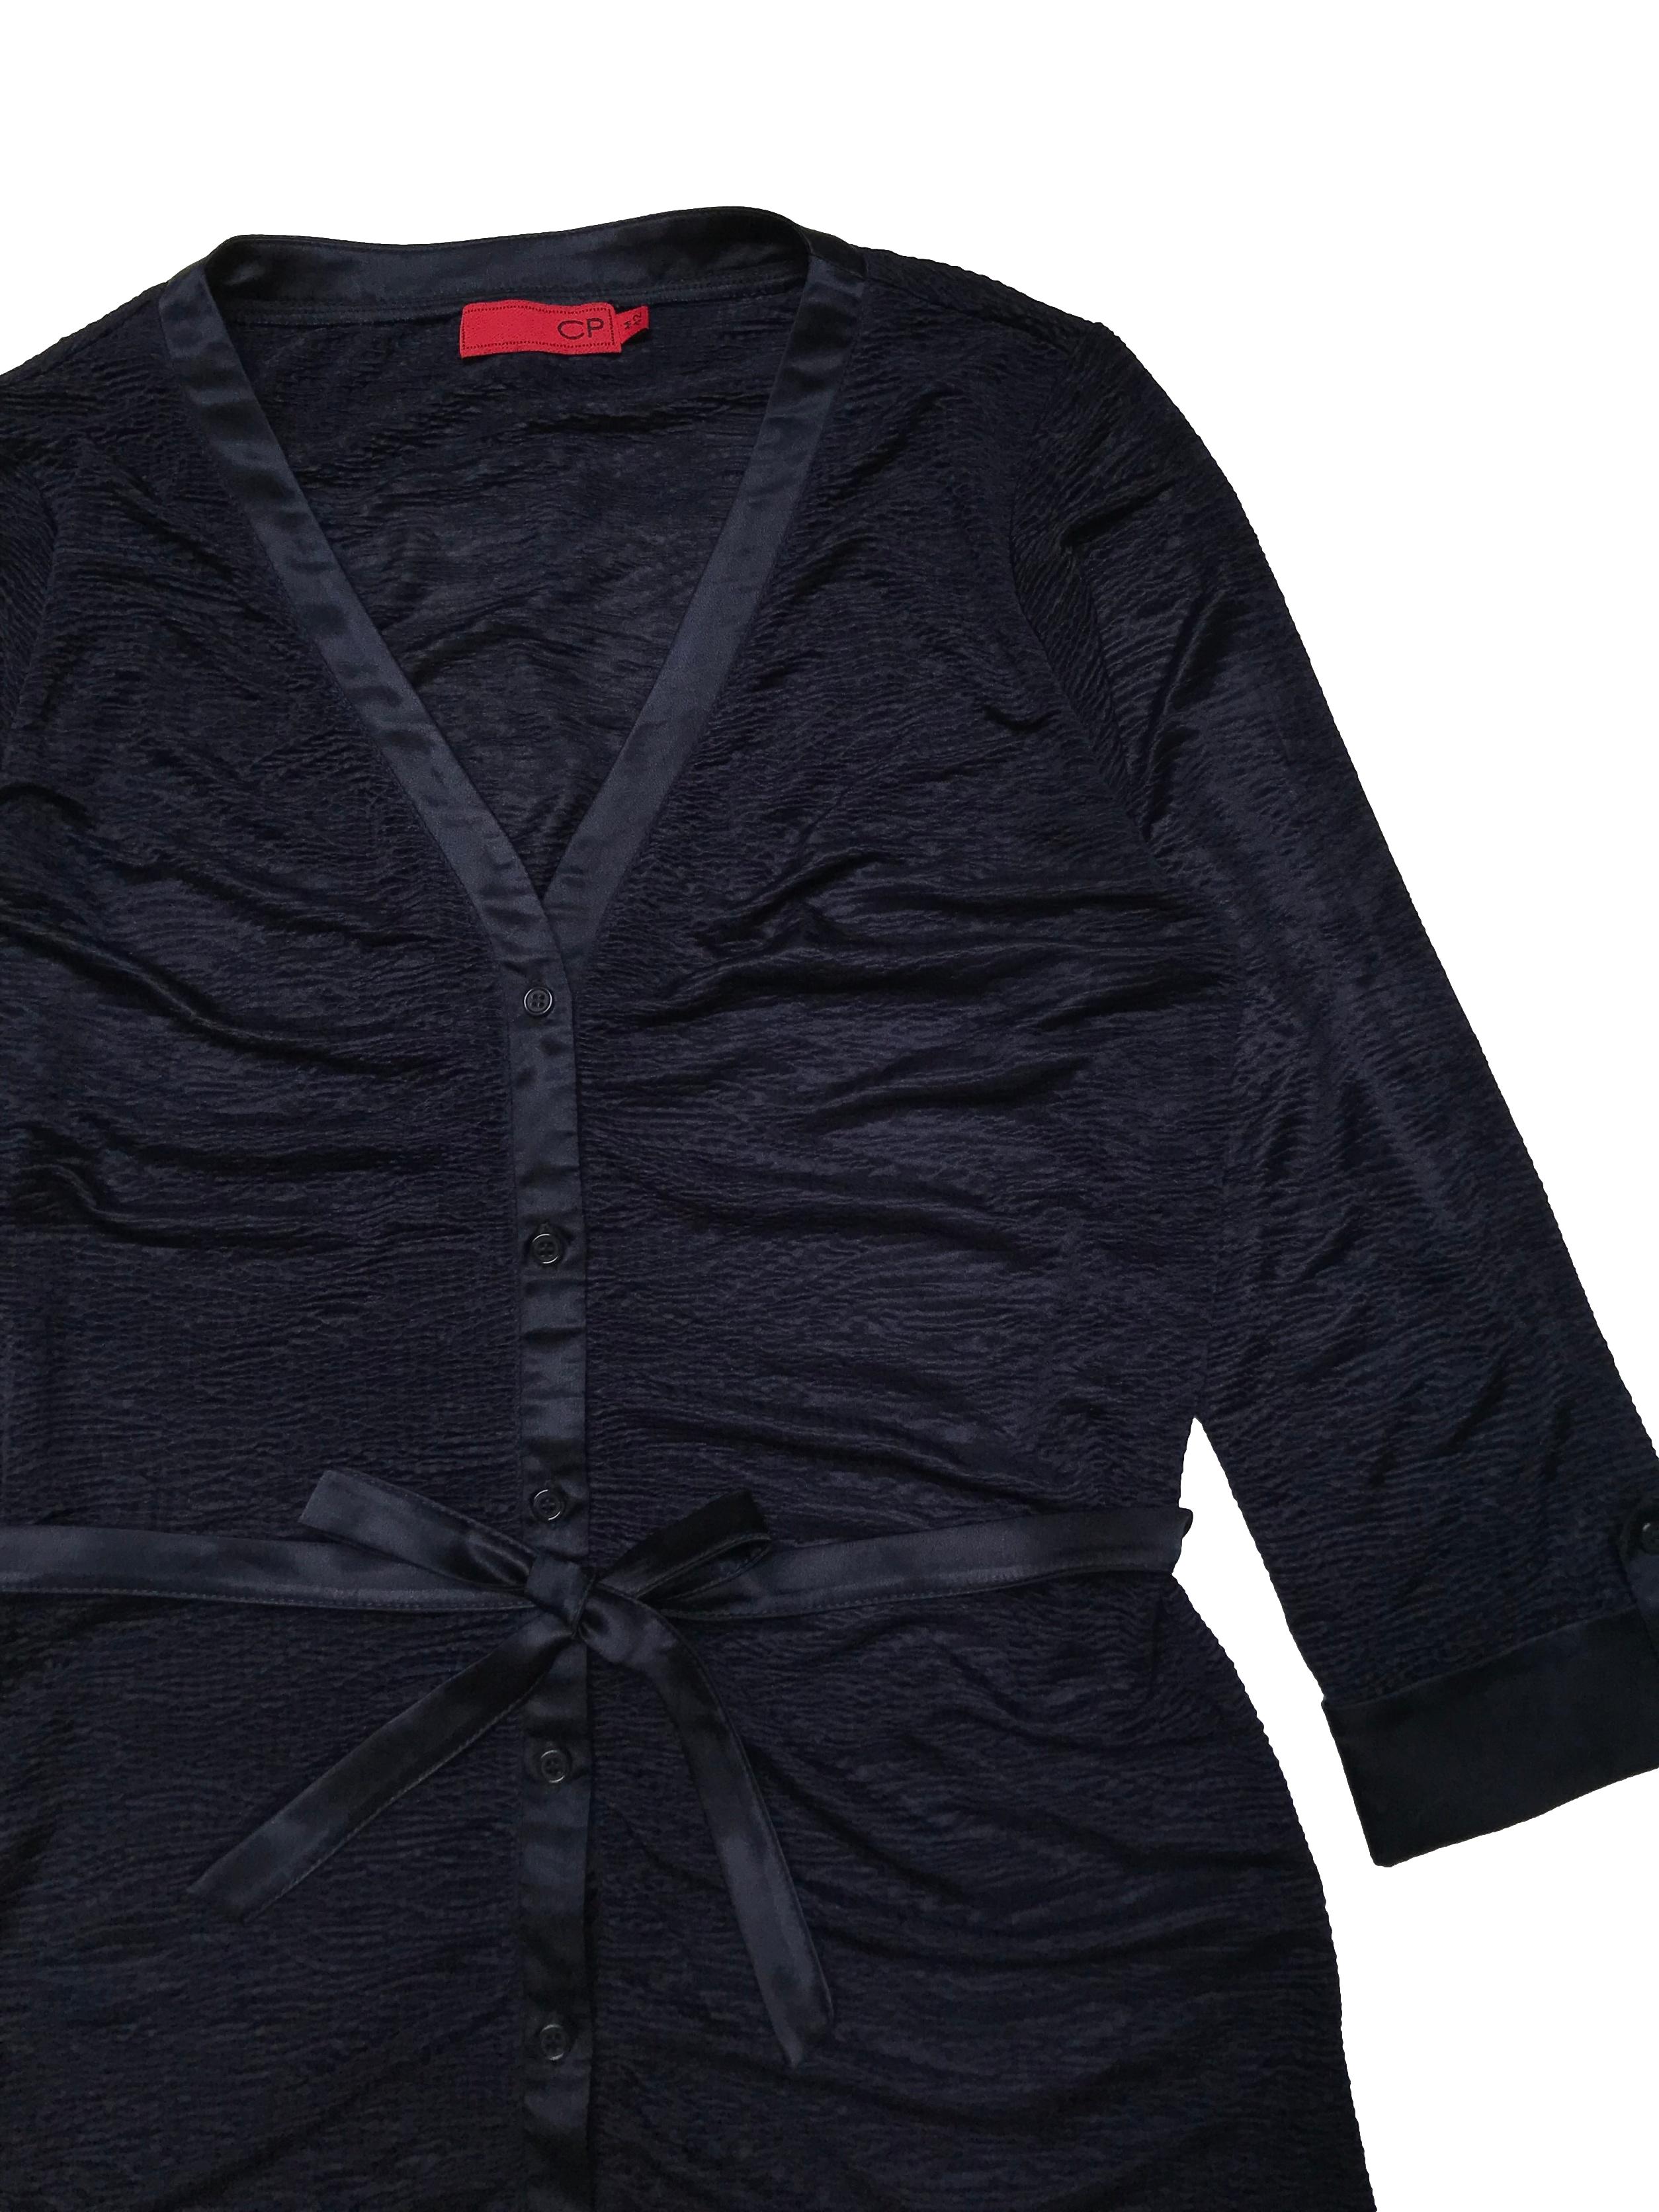 Blusa CP de tela sedosa con textura corrugada, manga 3/4 con dobladillo y cinto satinados para amarrar. Busto 100cm. Largo 70cm.